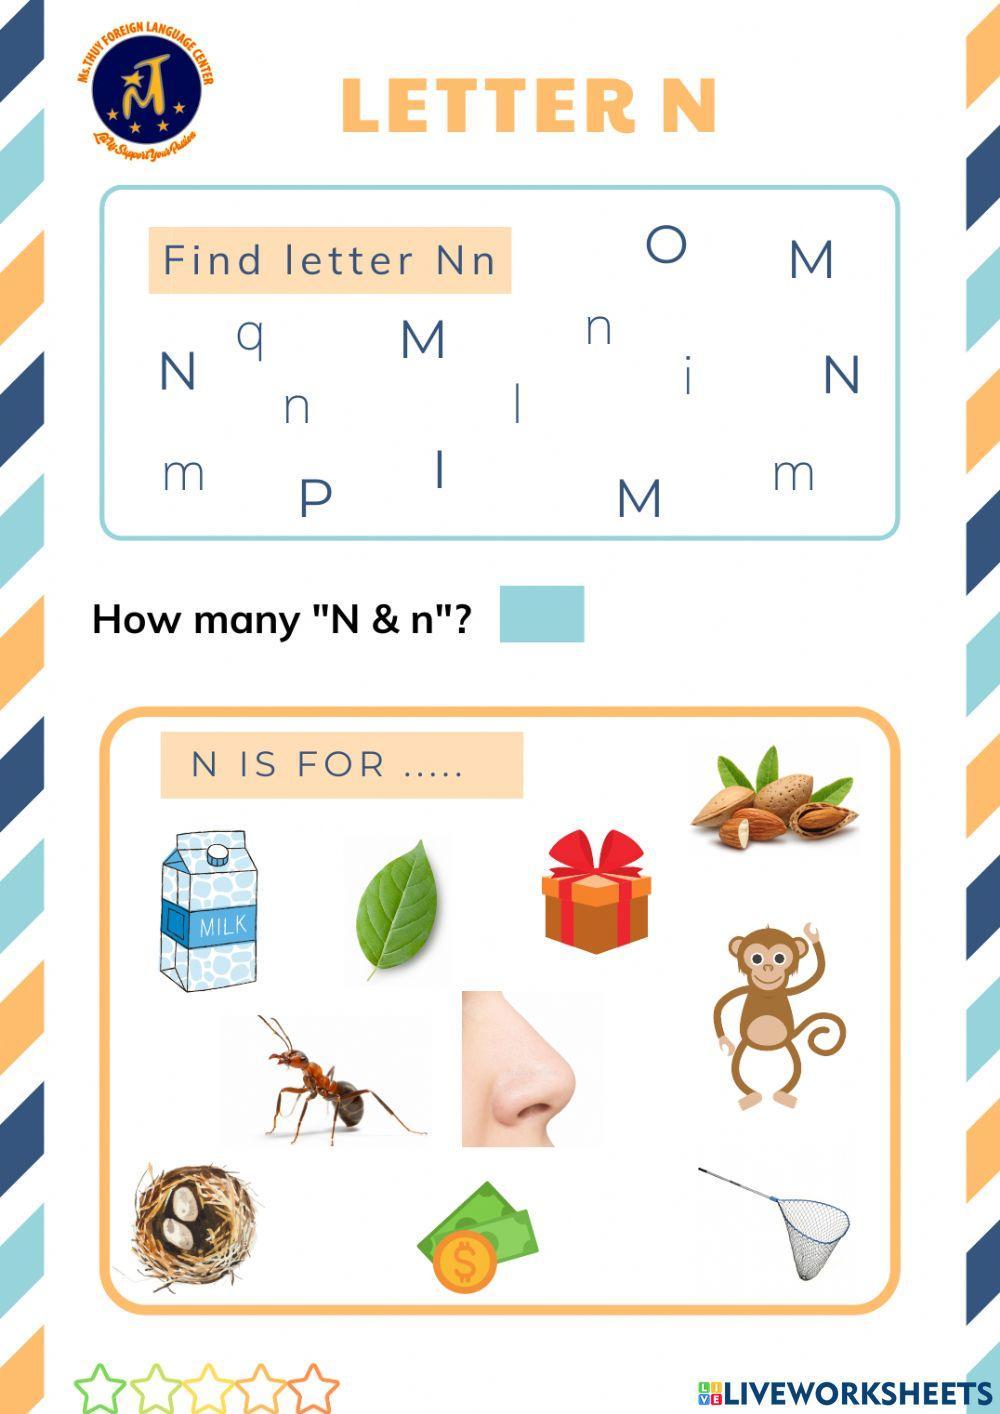 Find Letter Nn